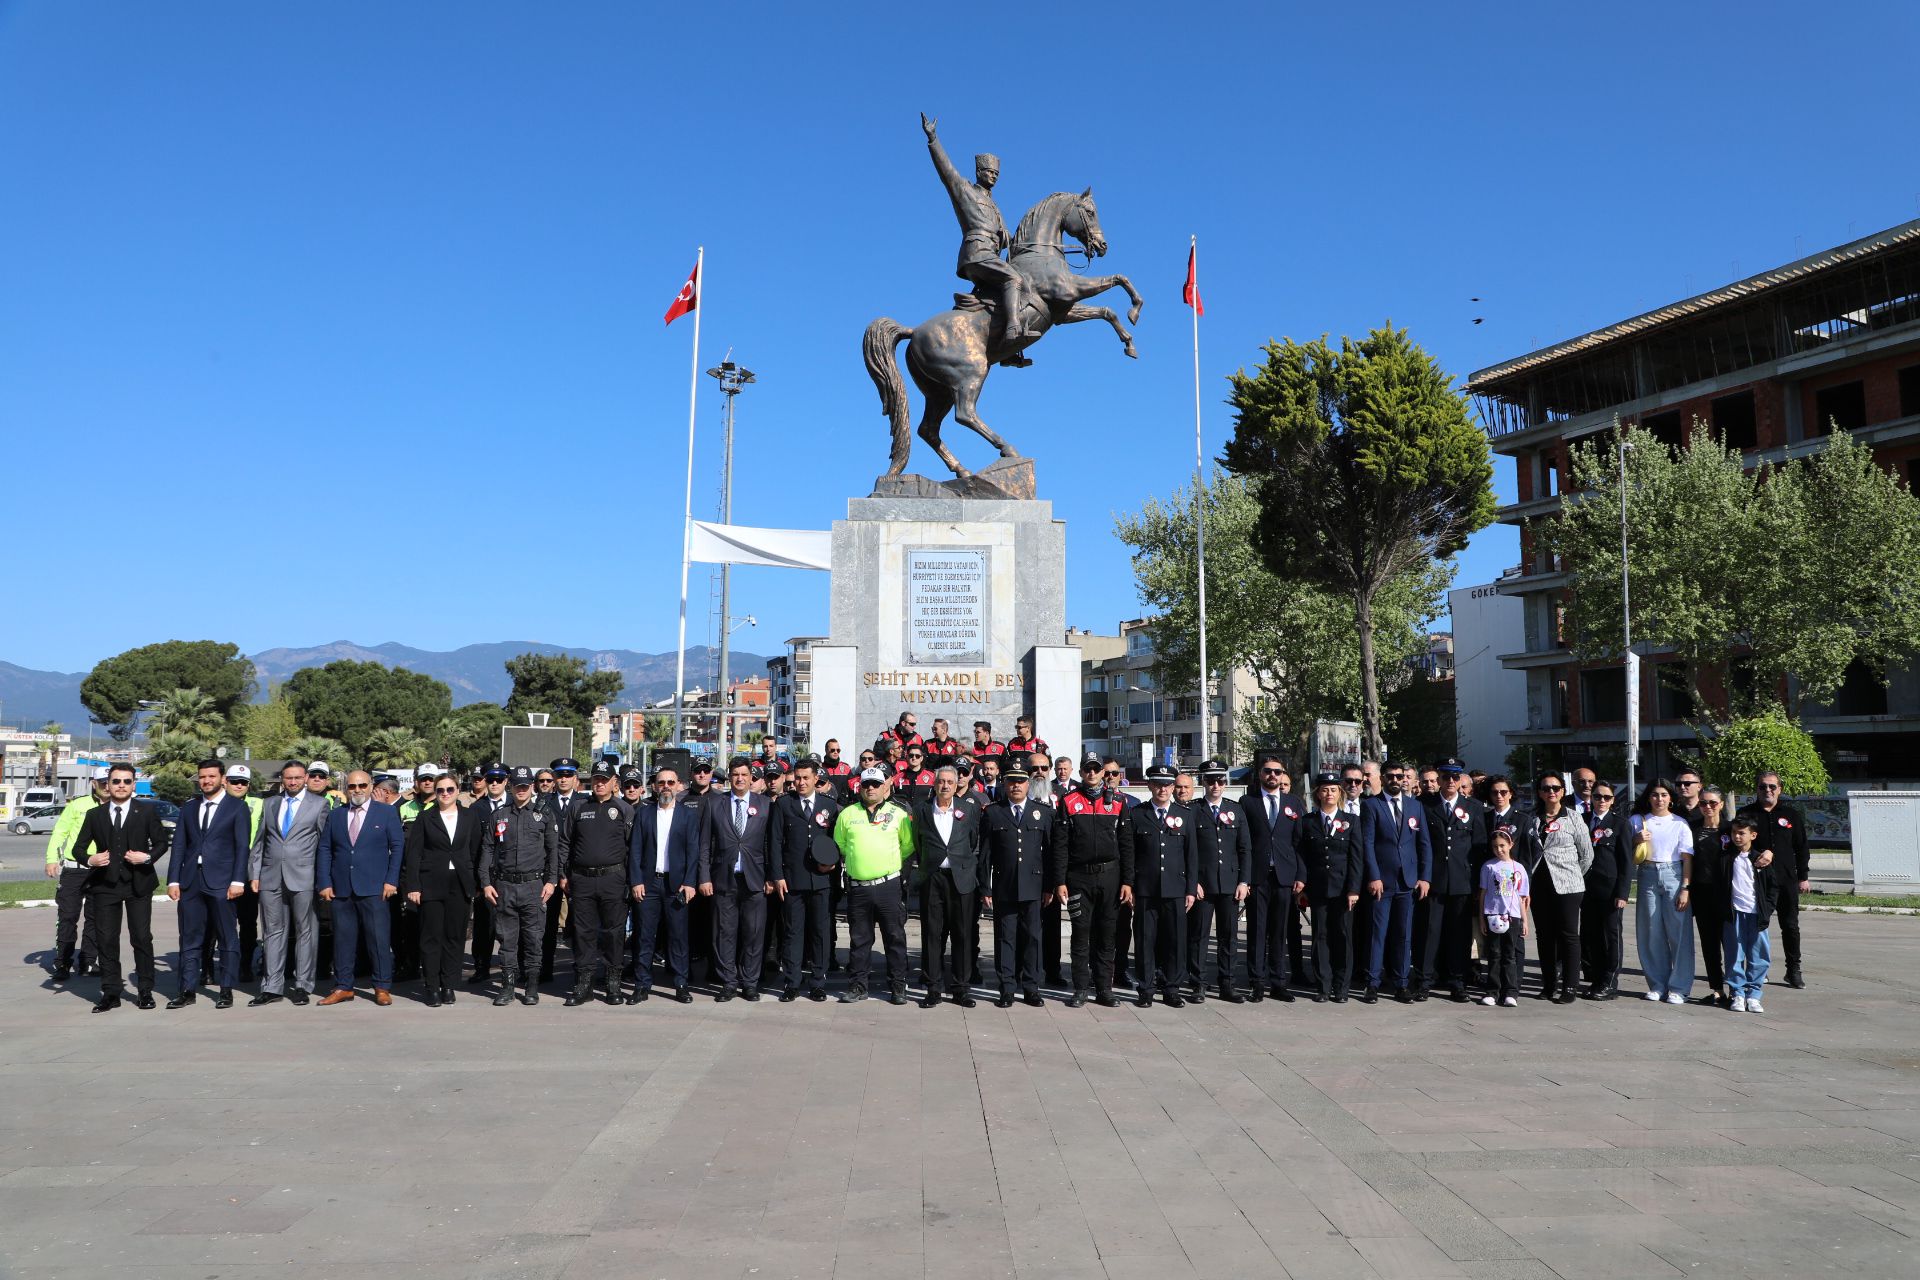 Türk Polis Teşkilatı 179. Kuruluş Yıl Dönümünde Çelenk Sunma Töreni Düzenlendi